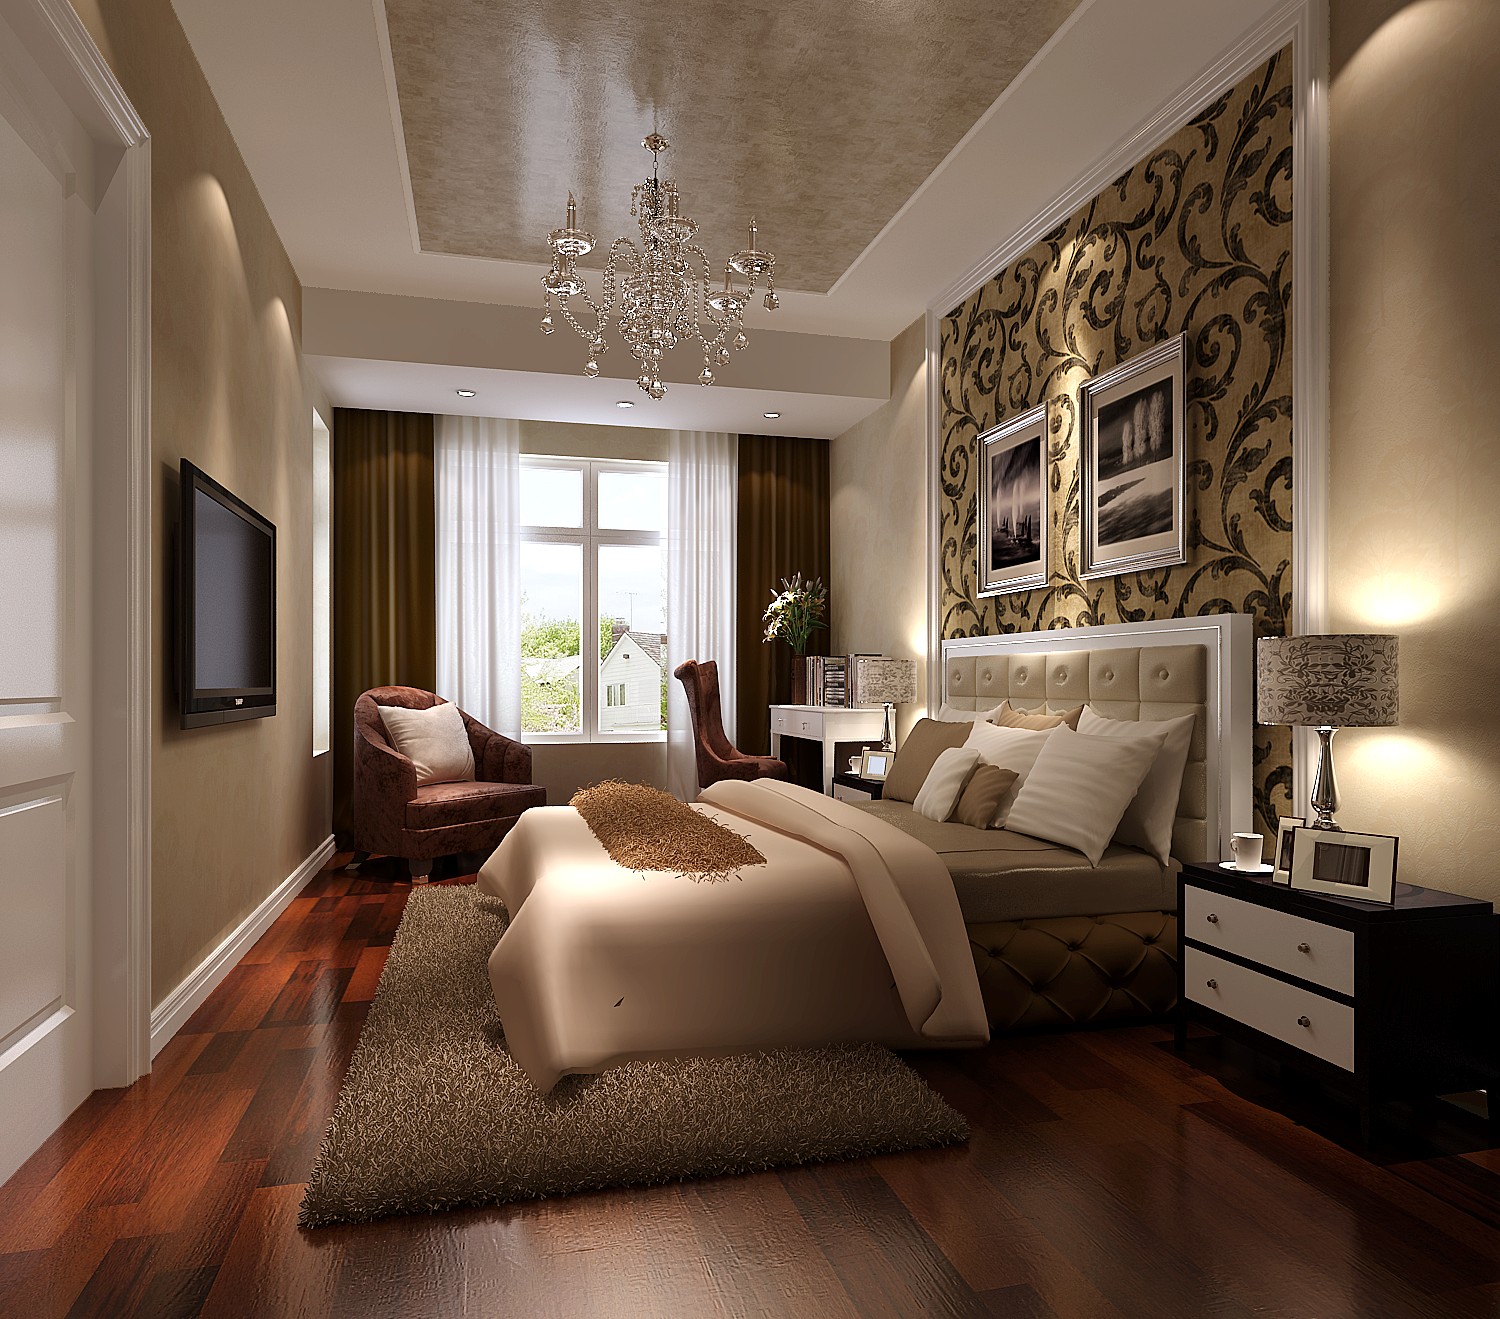 高度国际 御翠尚府 简欧 公寓 简约 卧室图片来自高度国际在高度国际-装饰设计简欧风格的分享